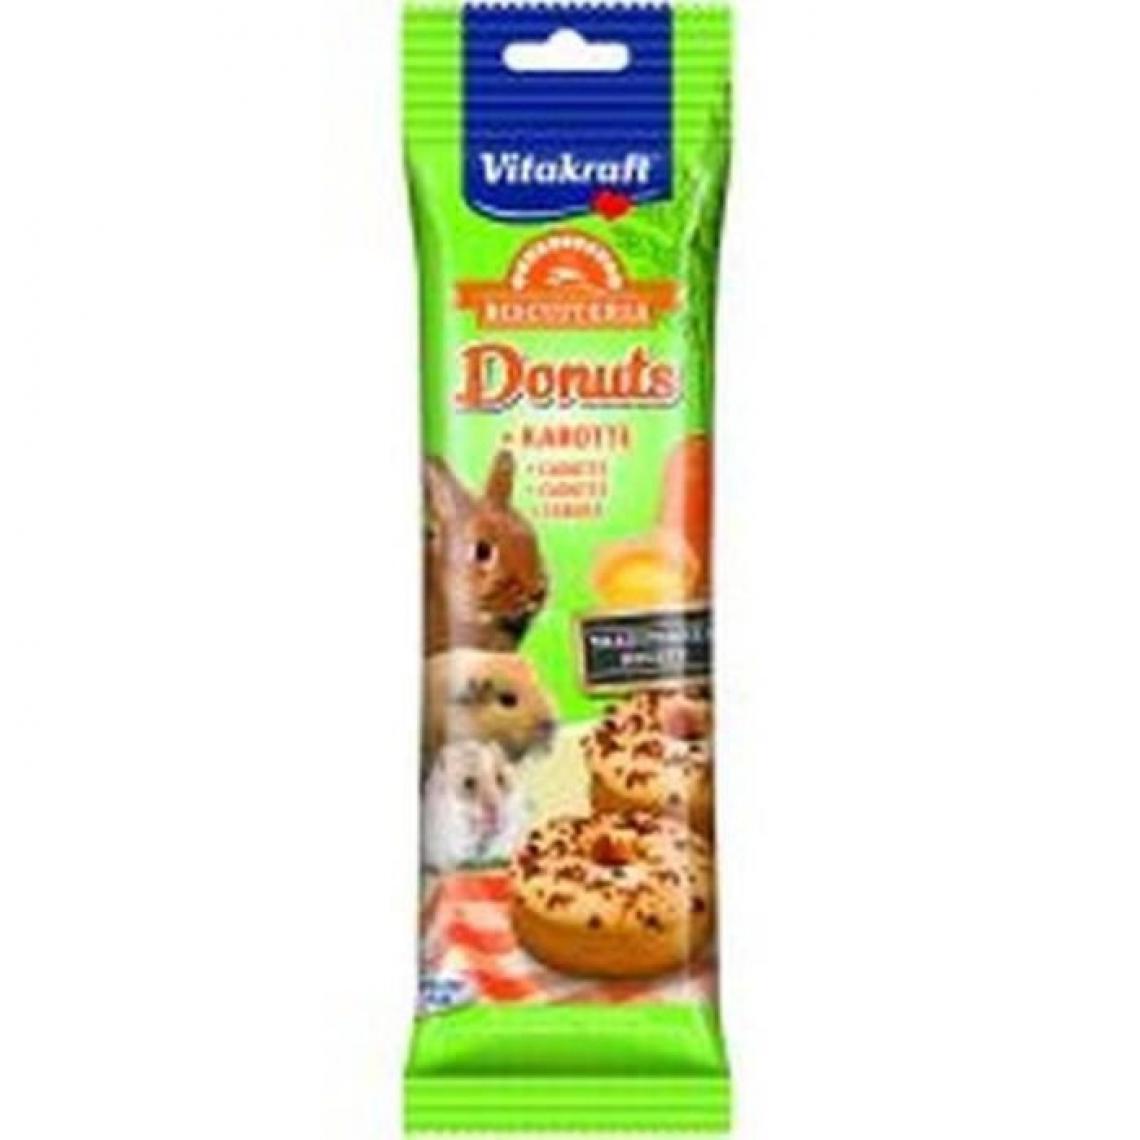 Vitakraft - VITAKRAFT Donuts Carotte pour tous rongeurs - Lot de 6x4 - Croquettes pour chien